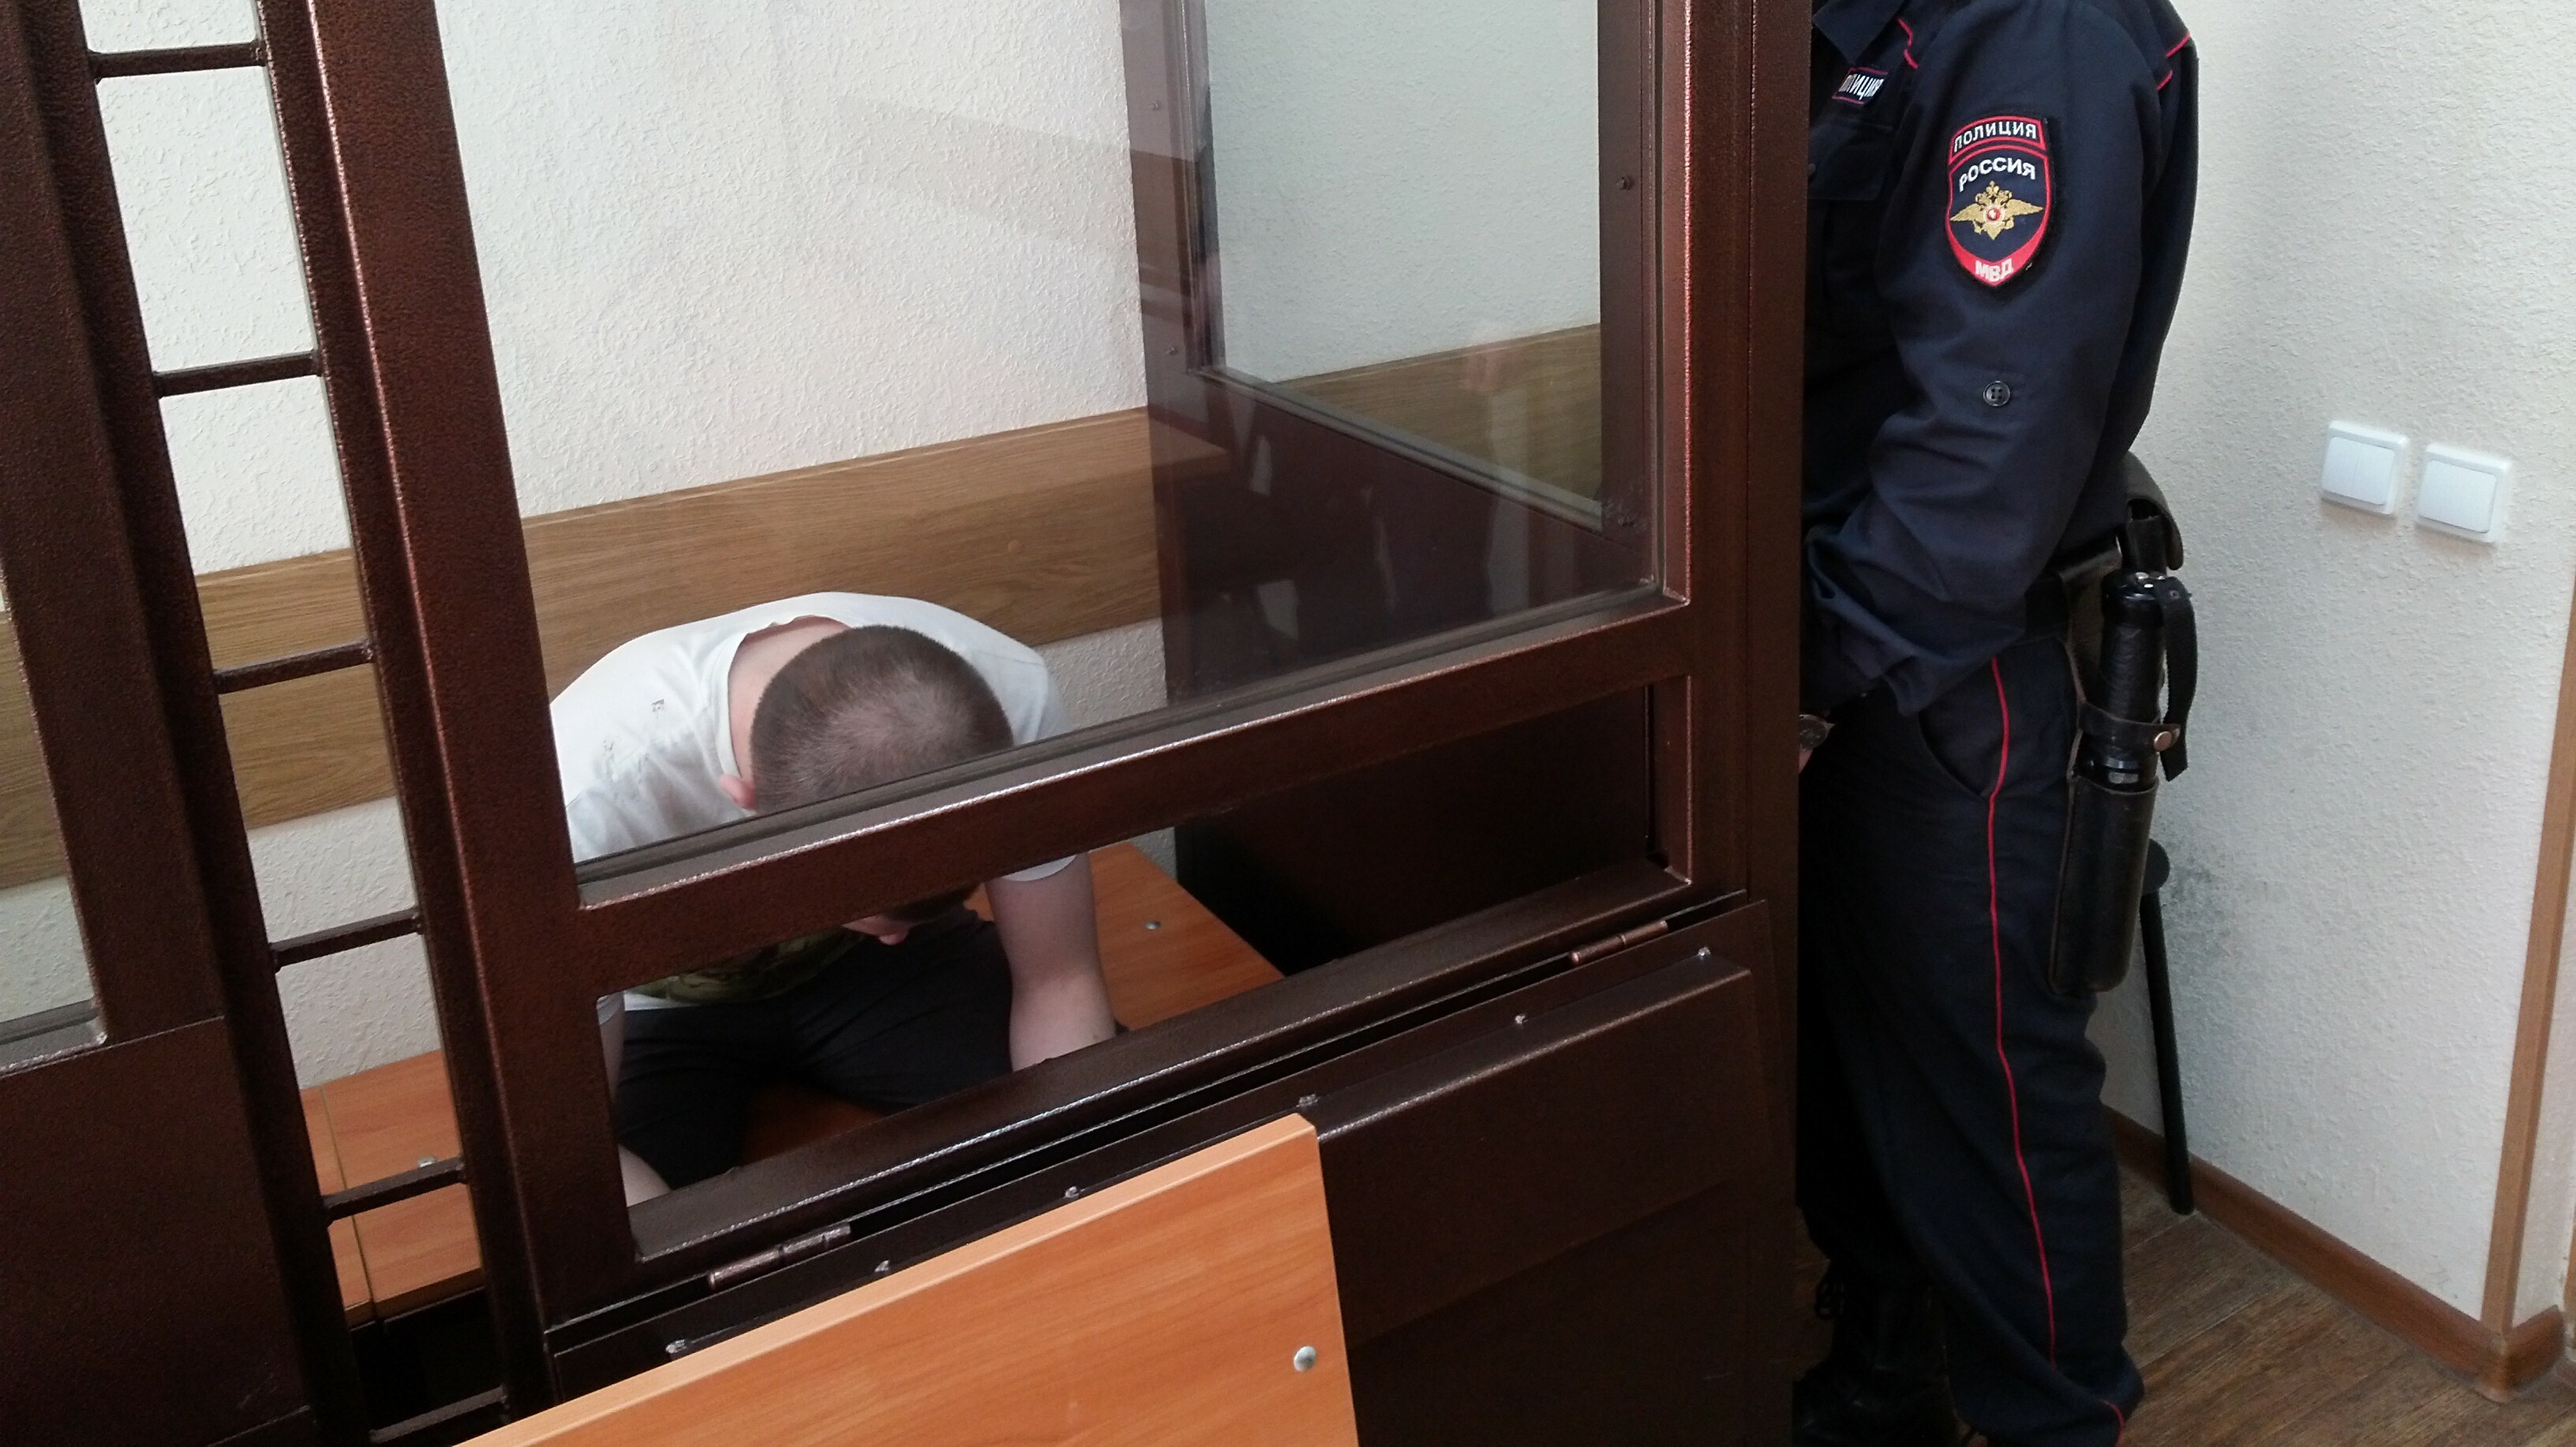 Жителя Таганрога осудили на восемь лет за убийство и хранение наркотиков